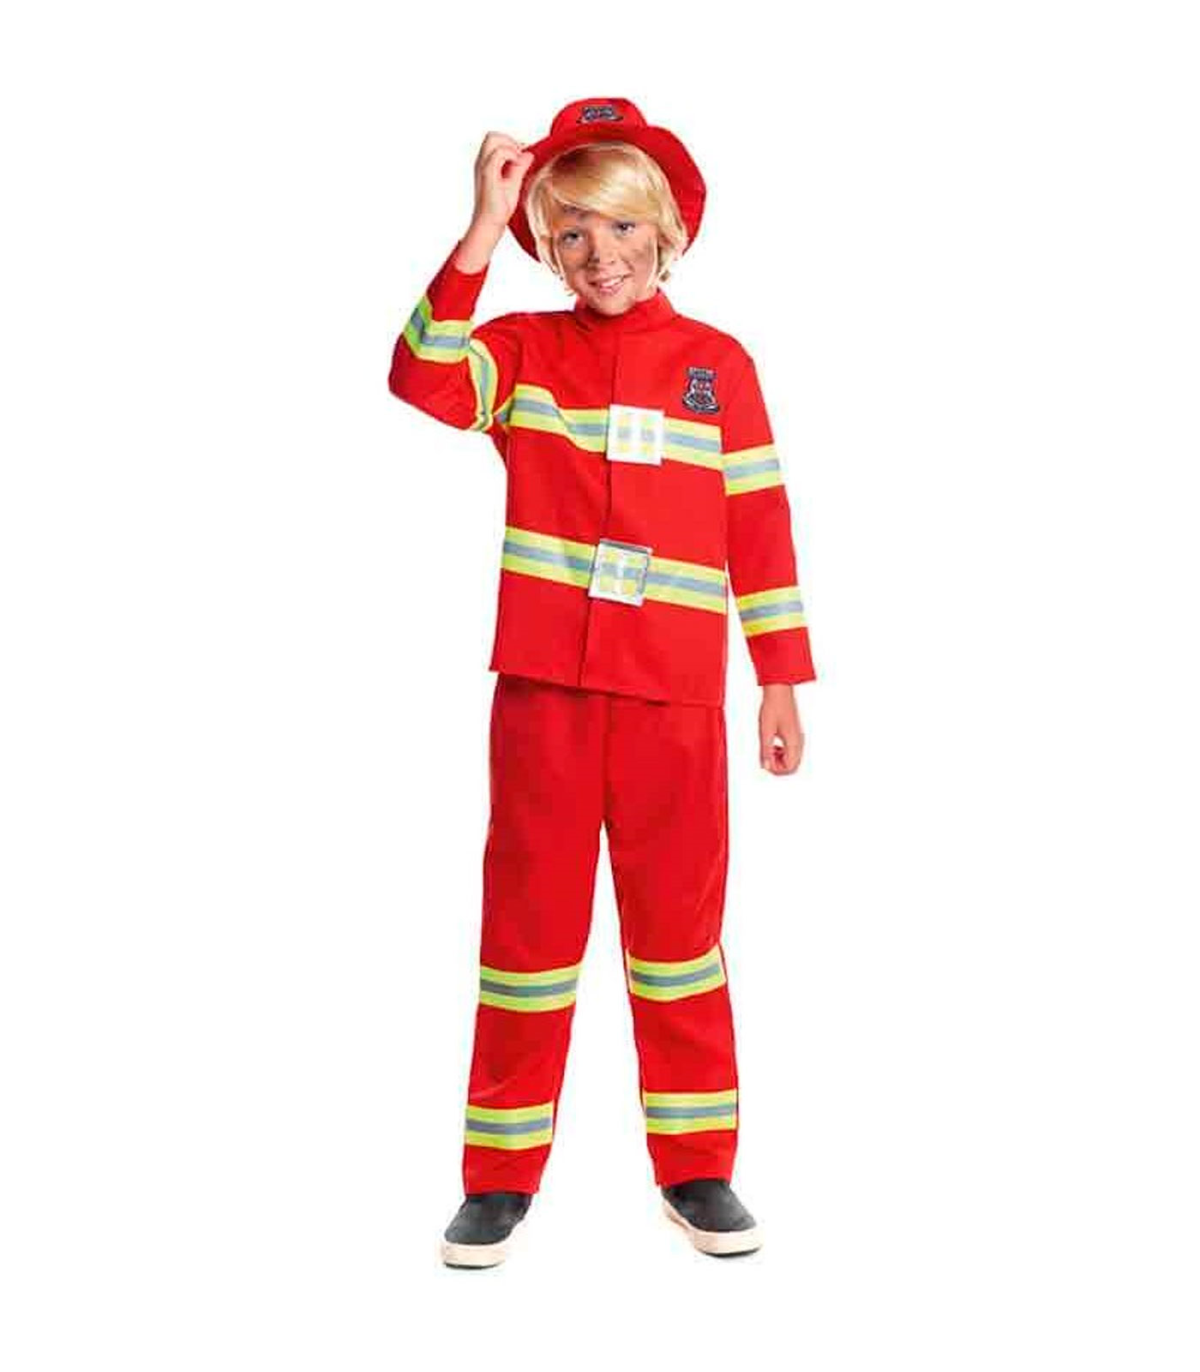 Tradineur - Disfraz de bombero infantil unisex - Fabricado en fibra  sintética - Incluye camiseta, pantalón y gorro - Carnaval, H